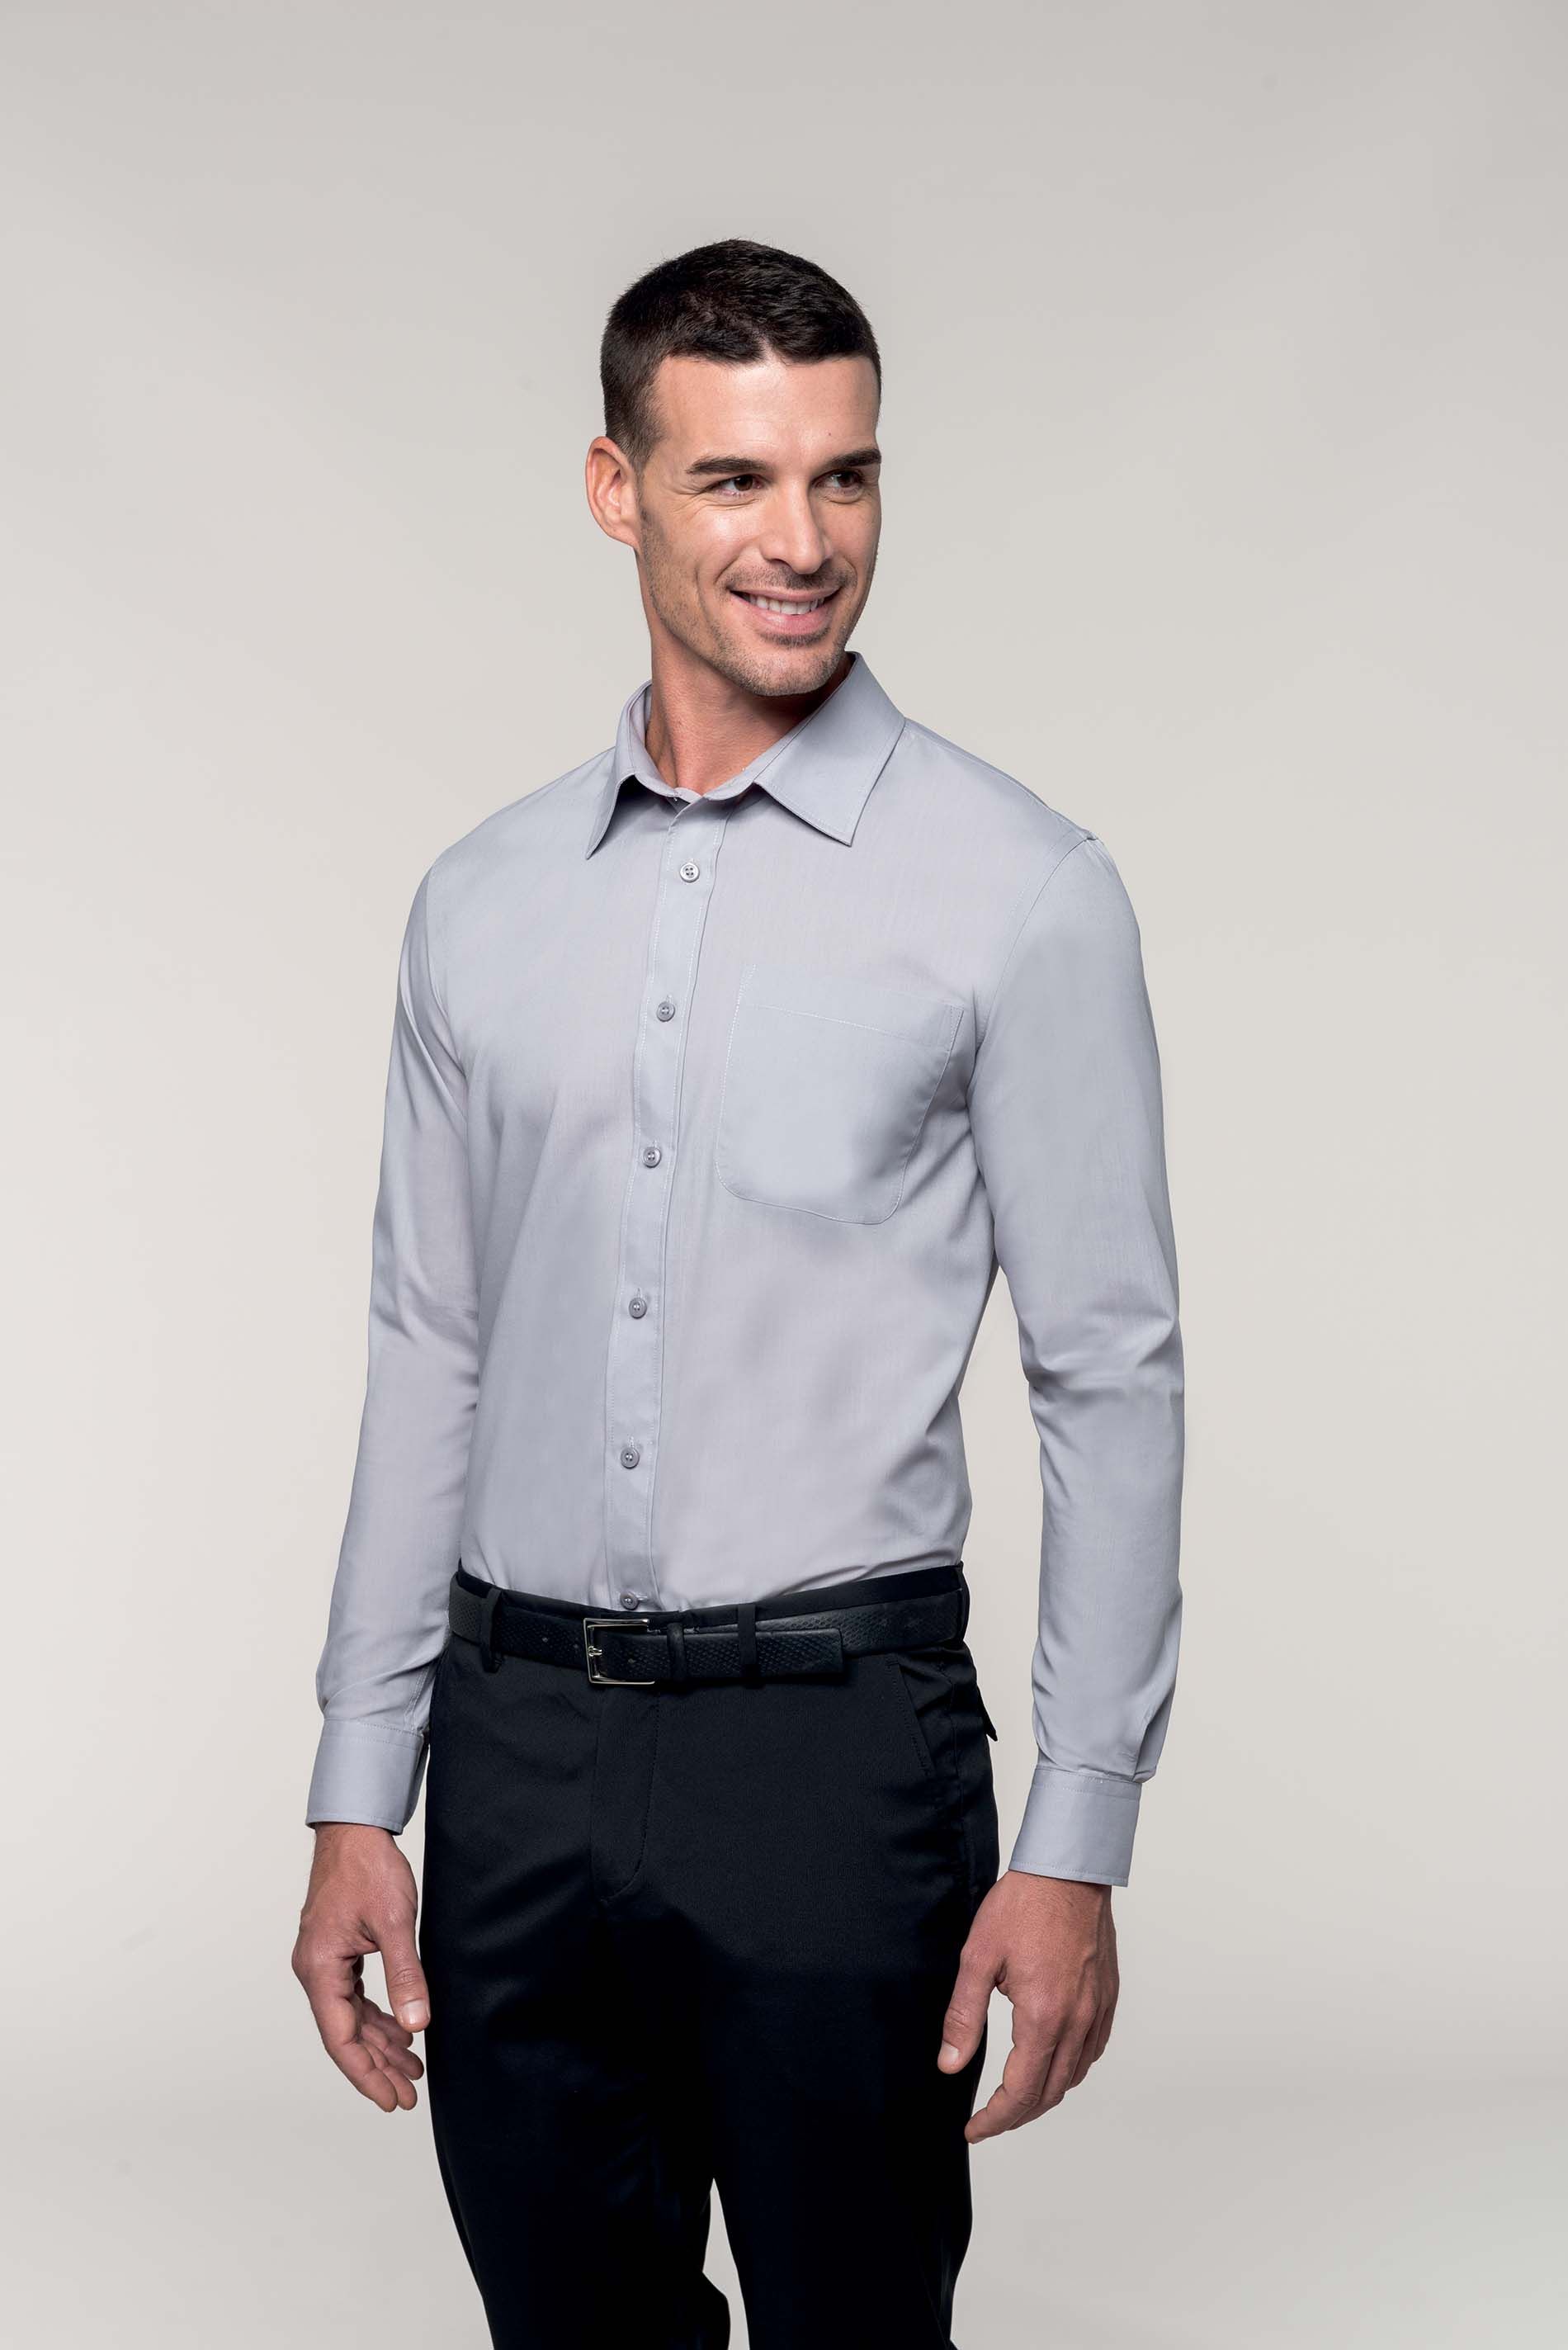 Chemises à personnaliser en ligne chez Textile Direct